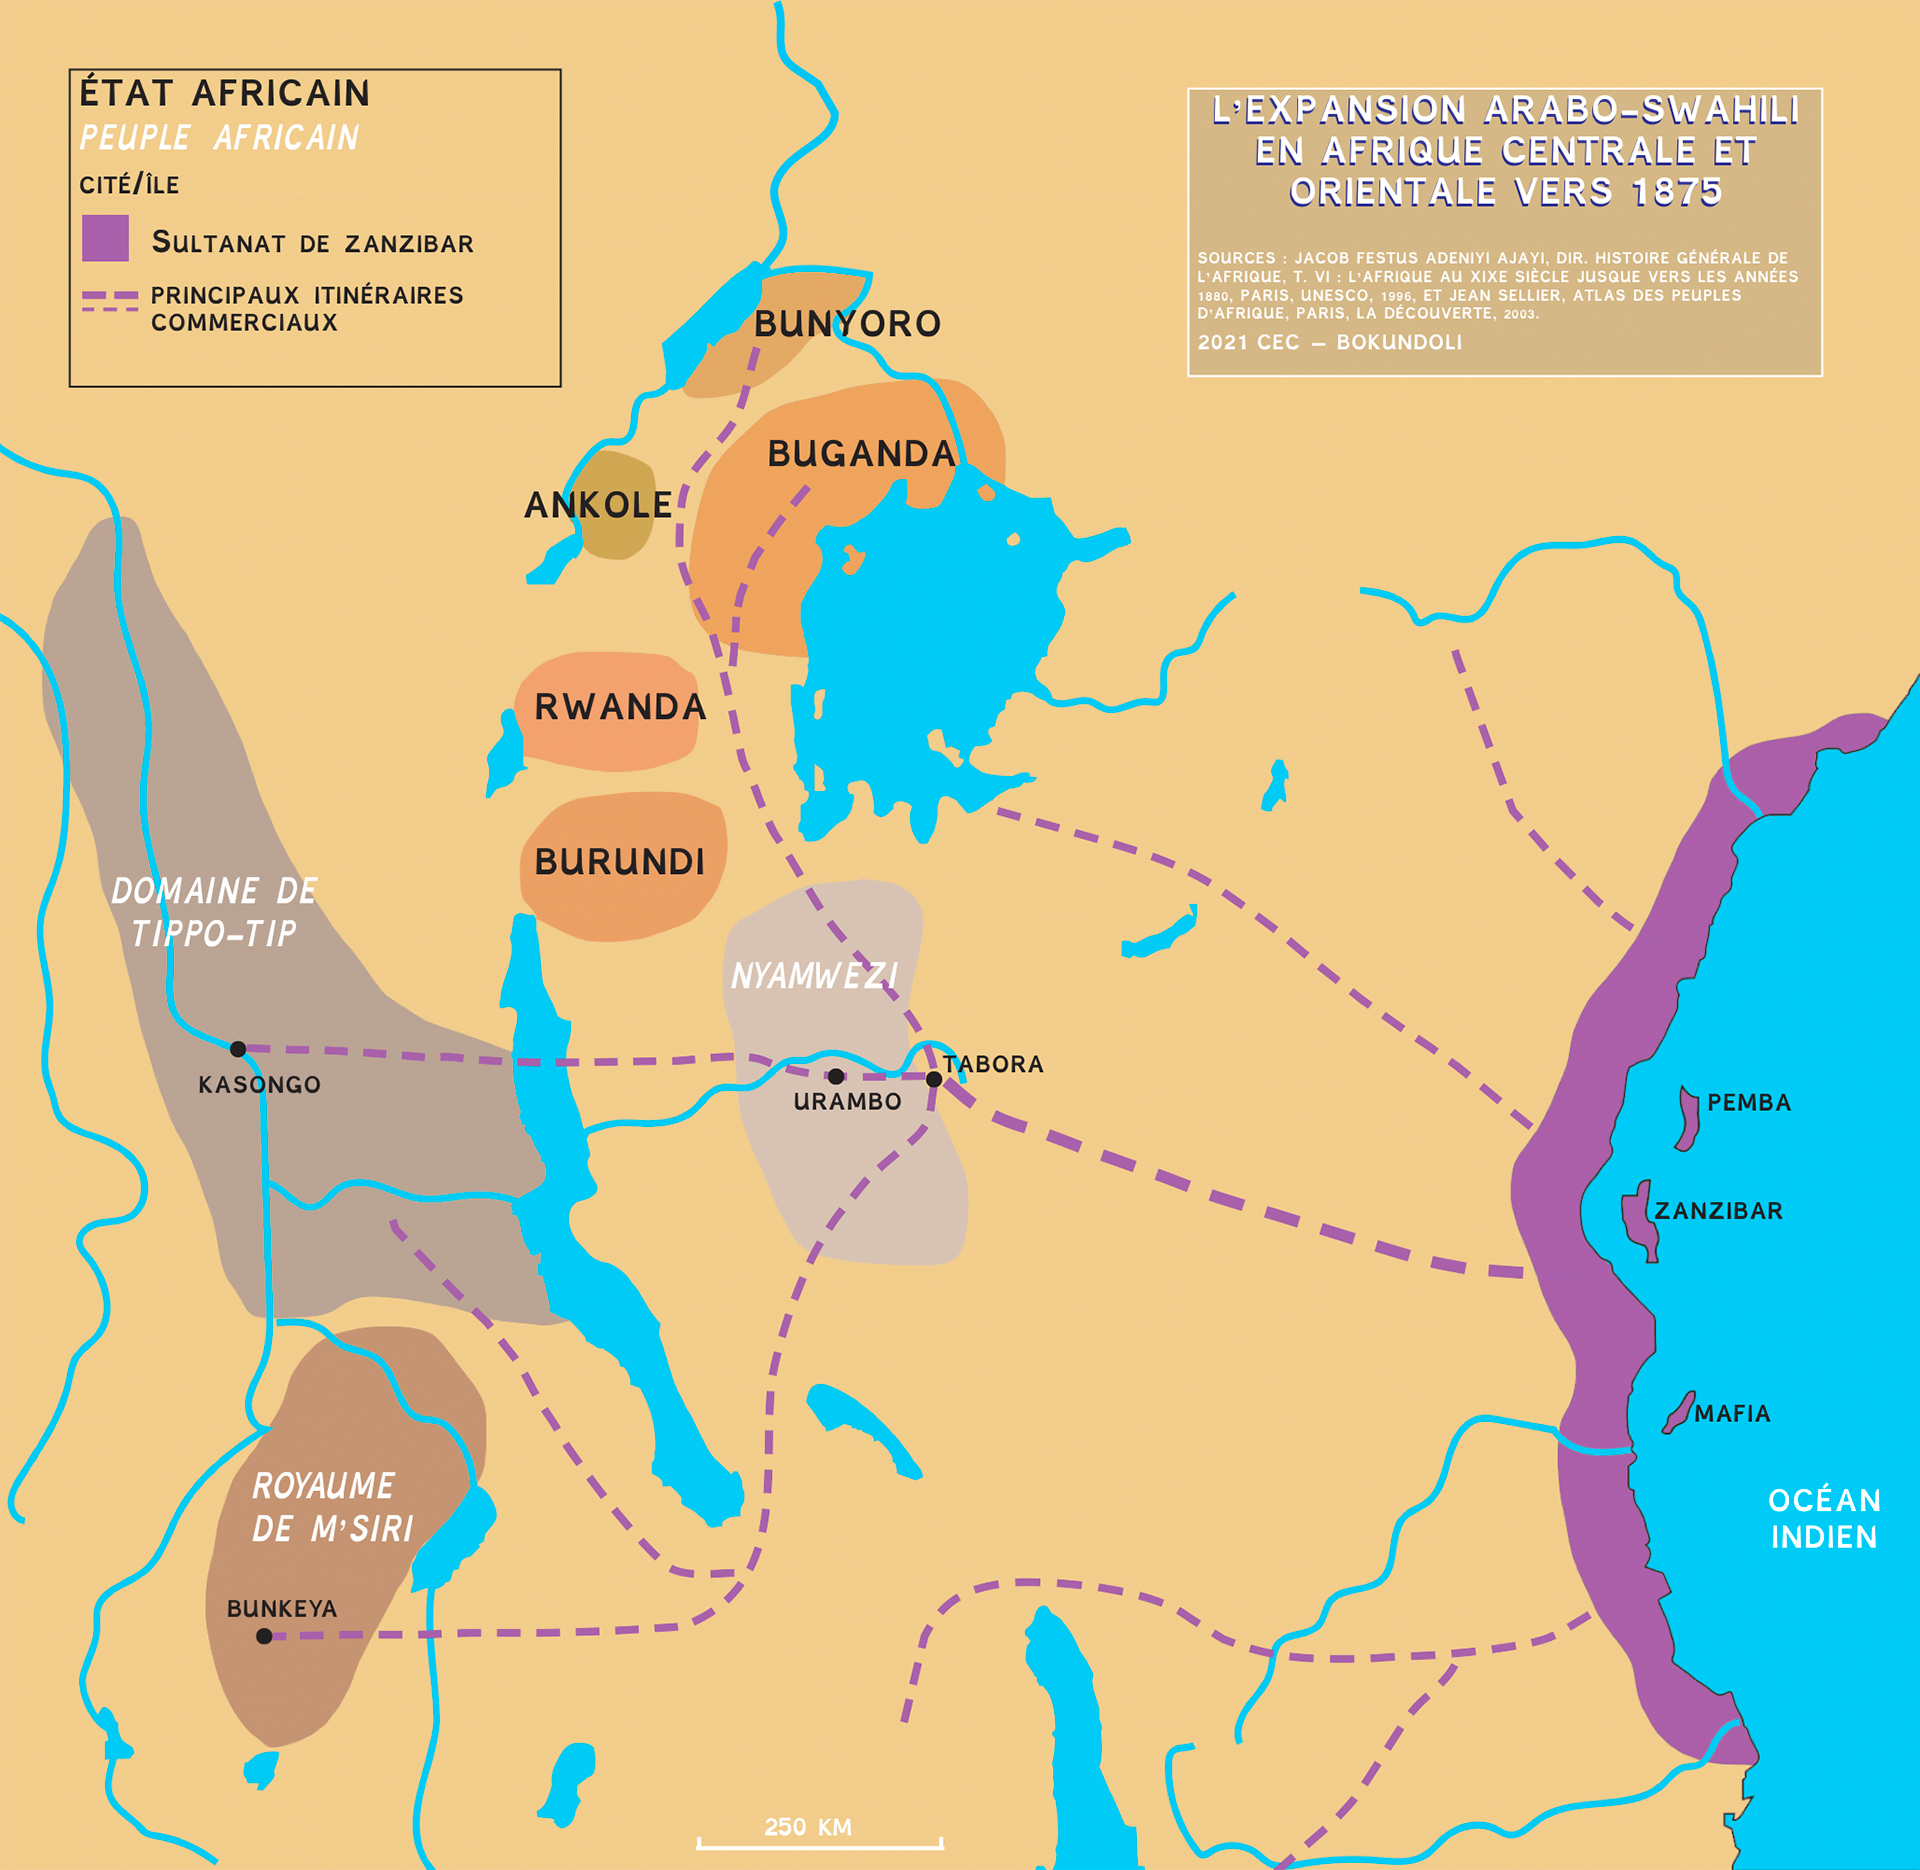 L'expansion arabo-swahili en Afrique centrale et orientale vers 1875